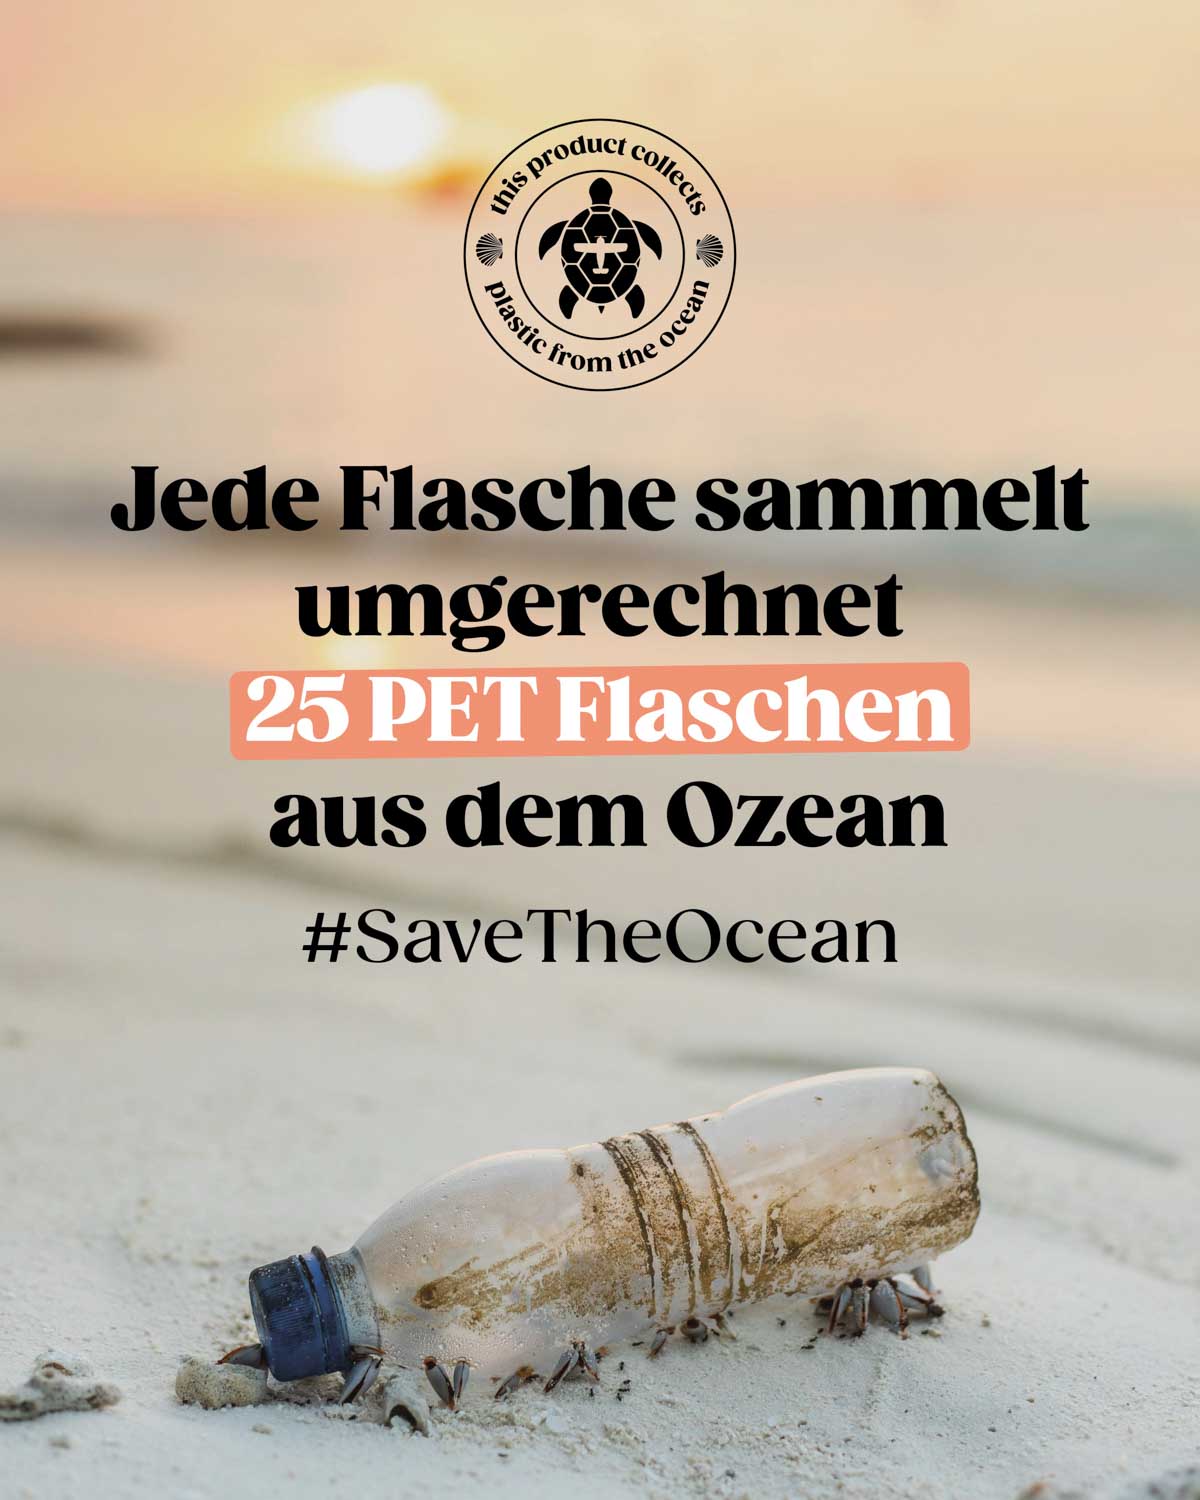 Jede verkaufte BIRDS Flasche sammelt umgerechnet 25 PET Flaschen, das entspricht einem Liter, aus dem Meer. Zusammen mit der Organisation Plastik Free Planet.